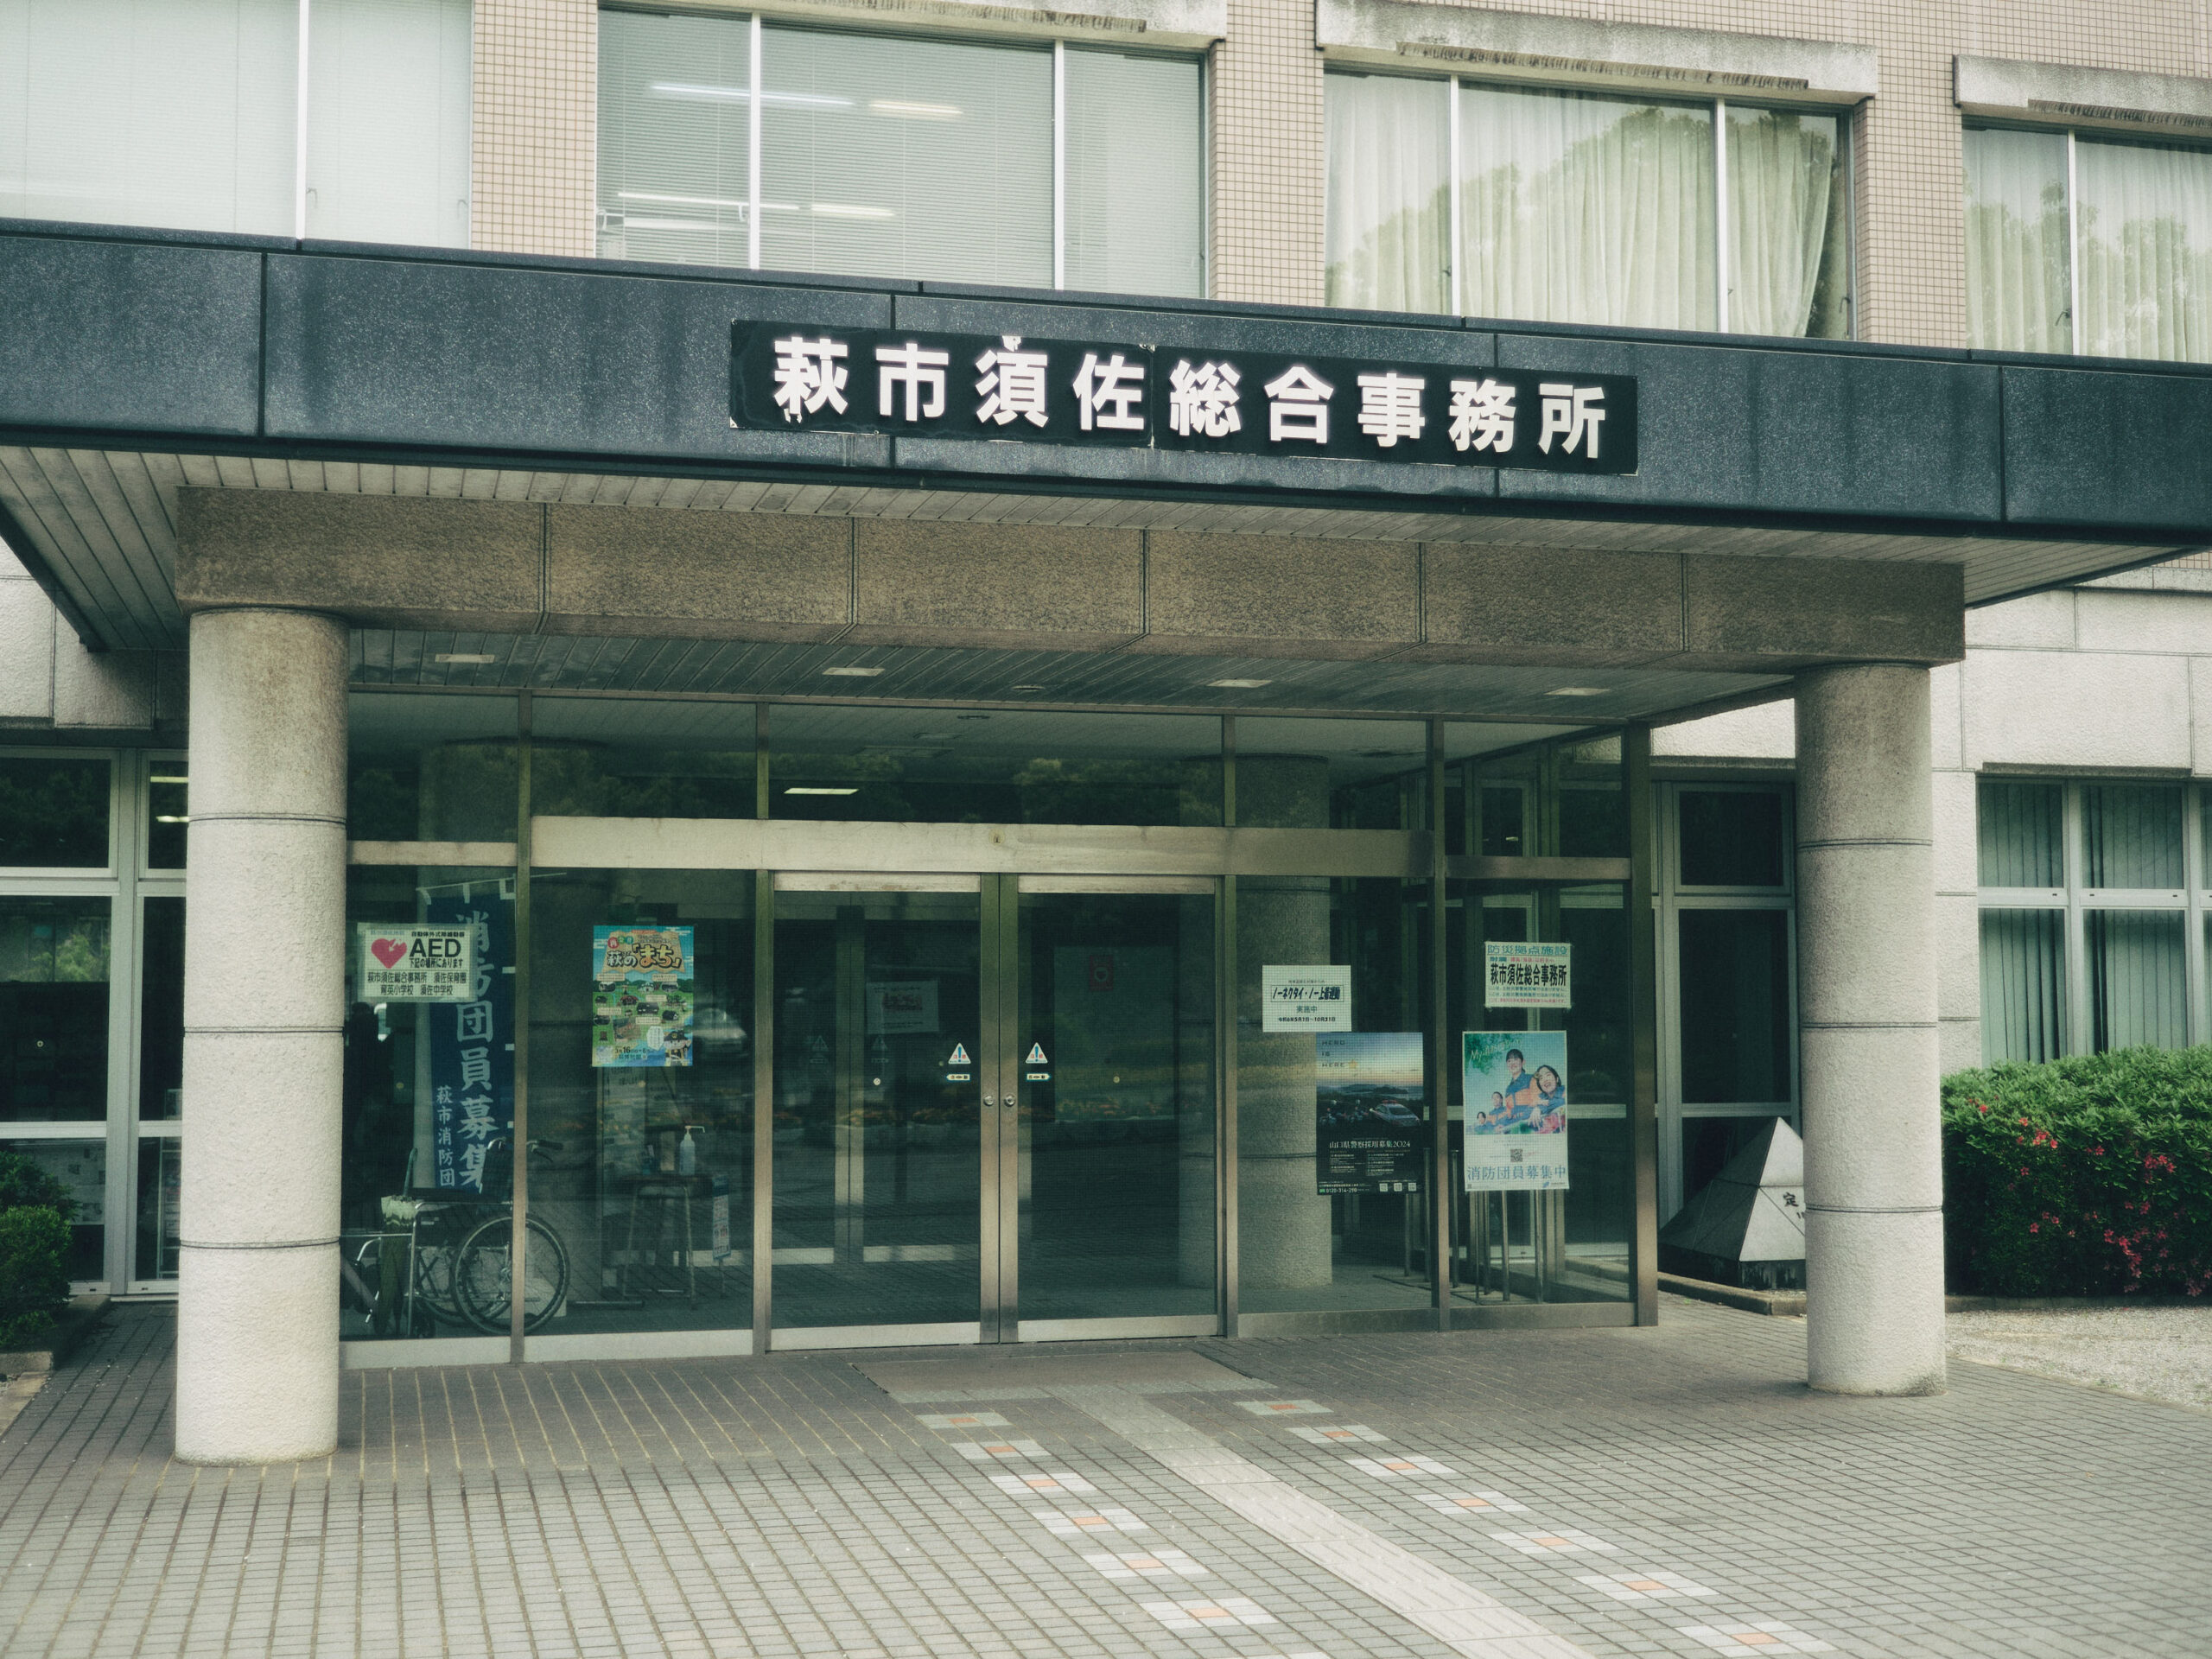 須佐総合事務所。